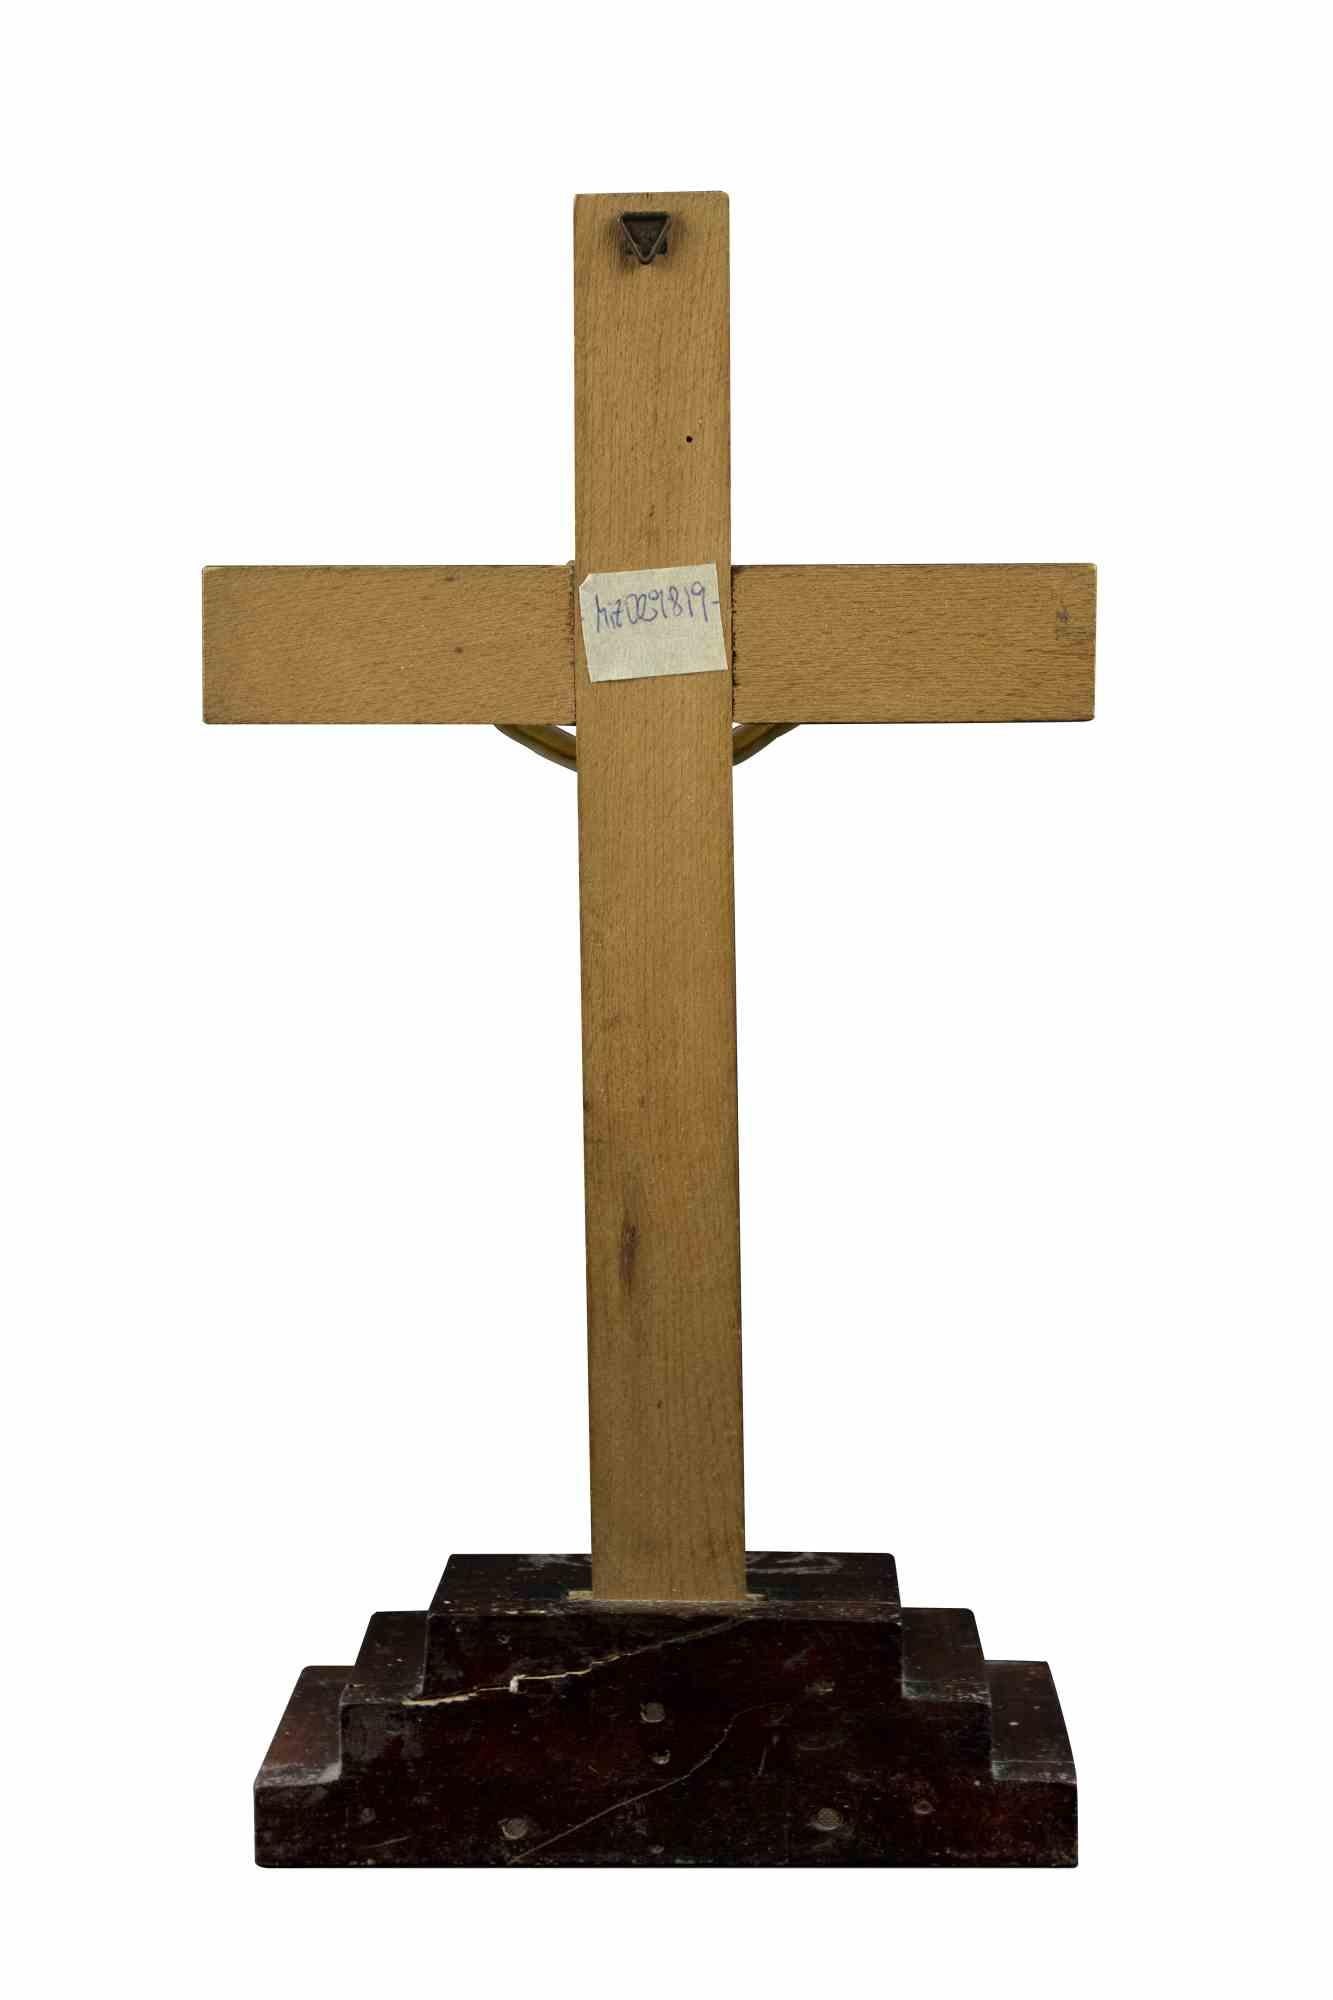 Die Kreuzigung ist ein dekoratives Objekt aus den 1980er Jahren.

Holz hat Christus verkrustet.